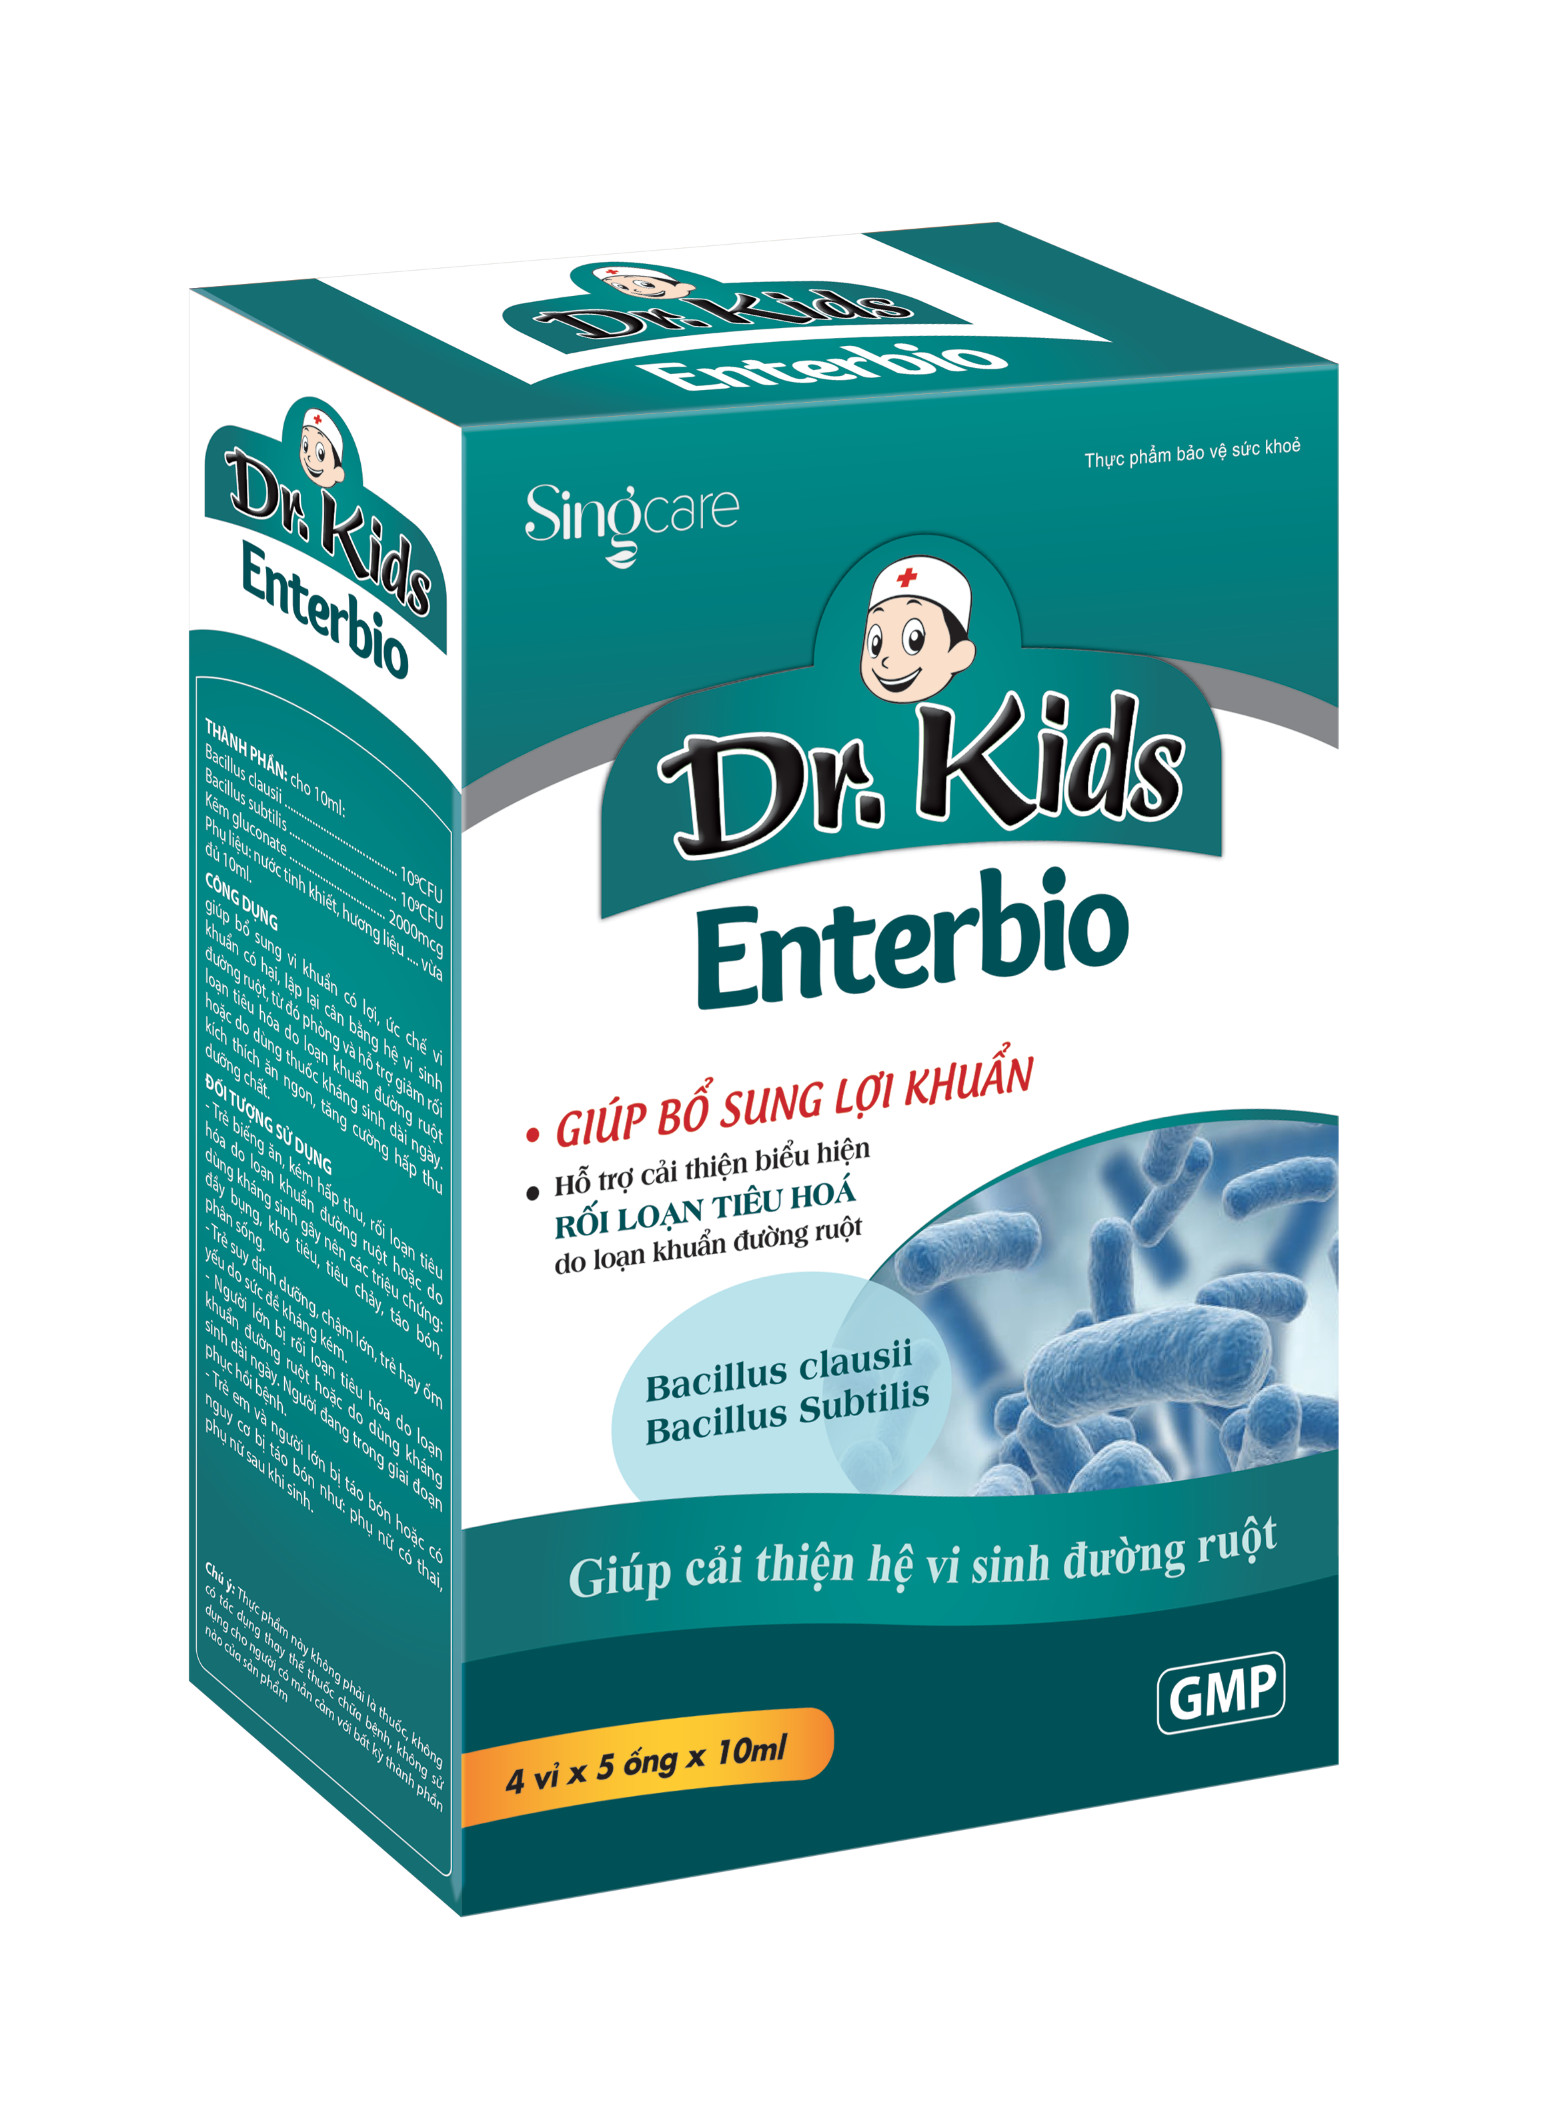 Dr.Kids Enterbio- Hỗ trợ cải thiện rối loạn tiêu hóa do loạn khuẩn đường ruột, bổ sung lợi khuẩn